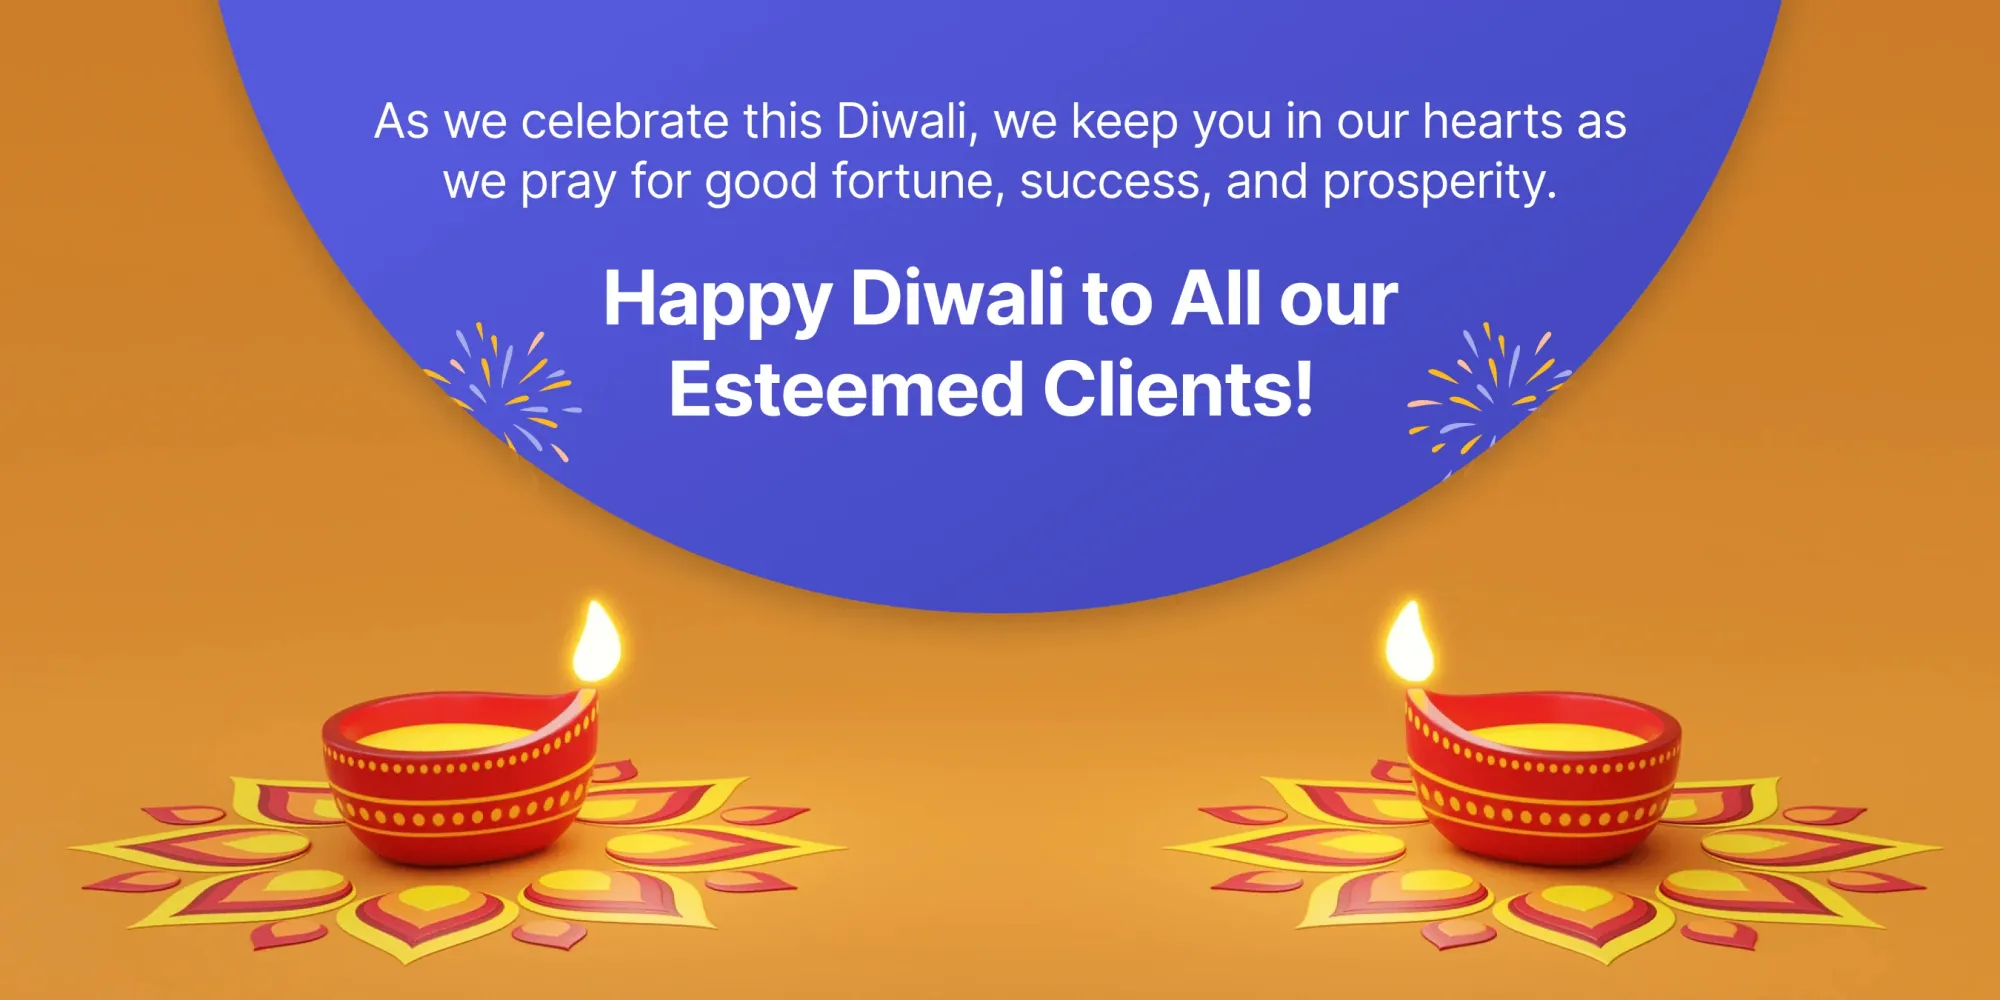 Meilleurs vœux de Diwali pour les clients